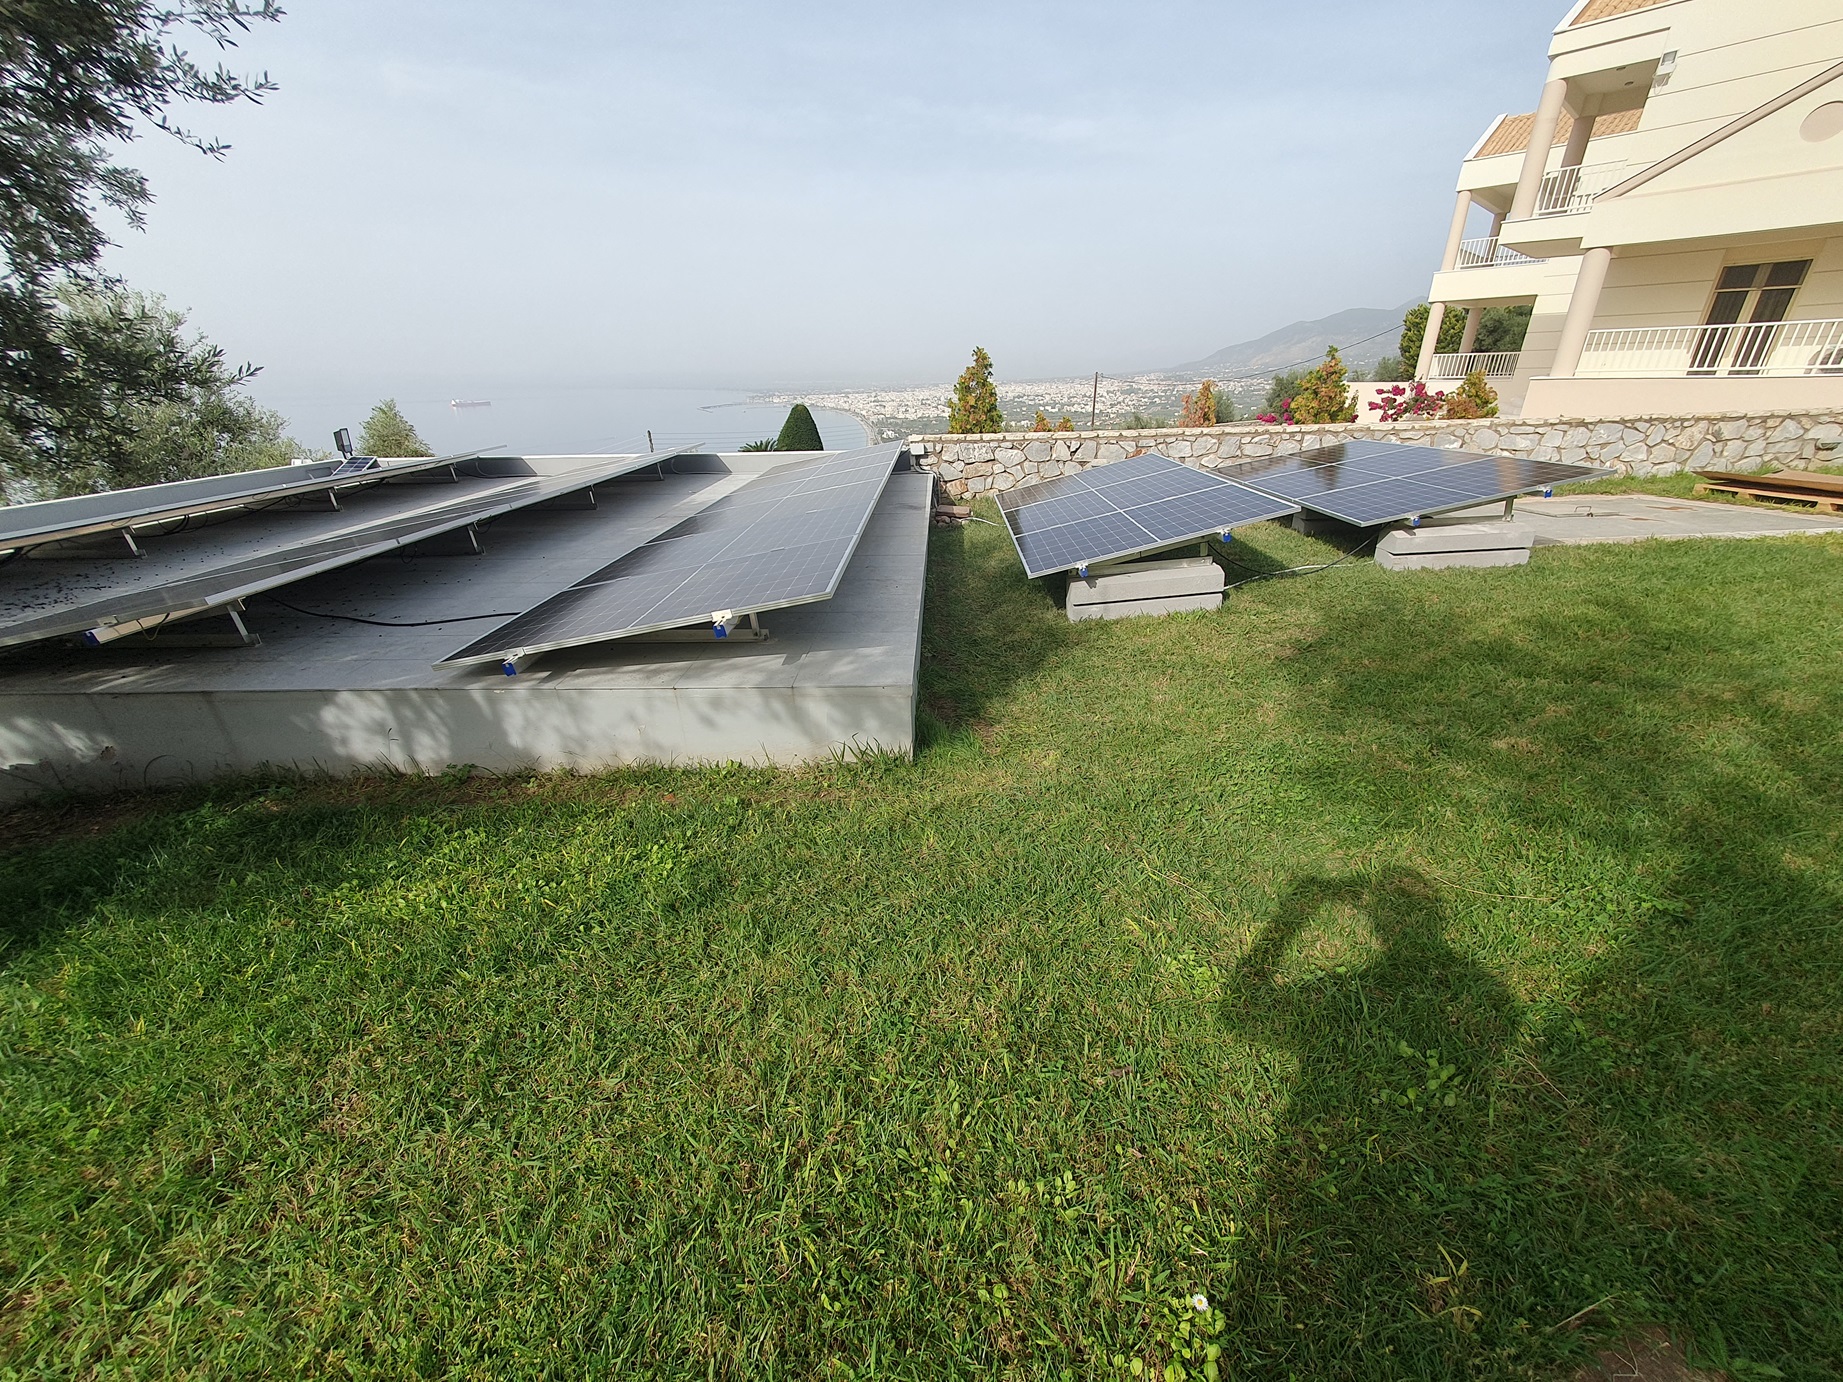 Η SolarWay εγκαθιστά στη Βέργα Καλαμάτας ένα από πρώτα φωτοβολταϊκά συστήματα της Enphase στην Ελλάδα